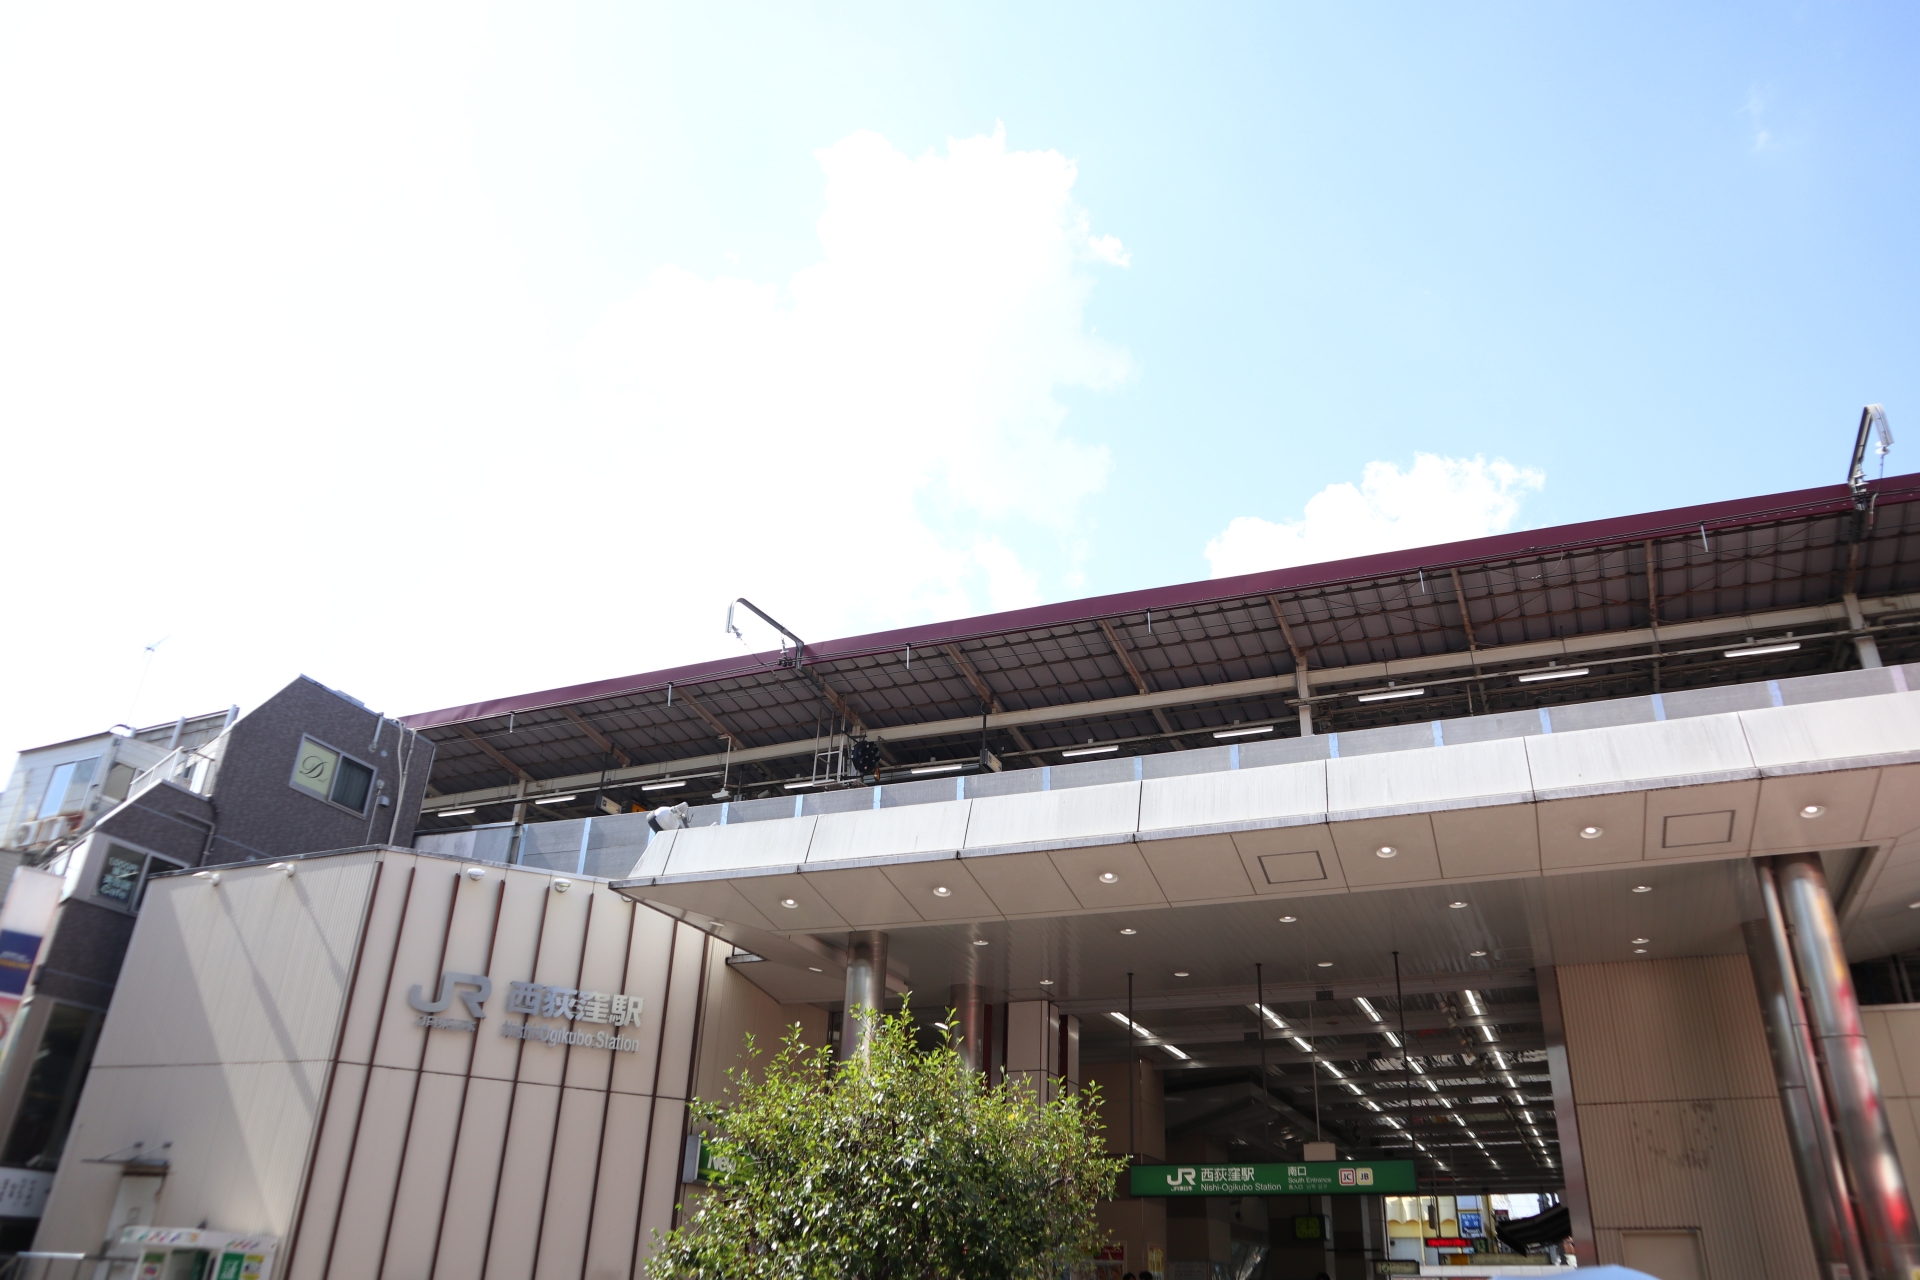 中央線快速（平日ダイヤのみ）、中央・総武線各駅停車が停車する西荻窪駅。2022年度の1日平均乗車数は約4万人で、JR東日本全体では100位。